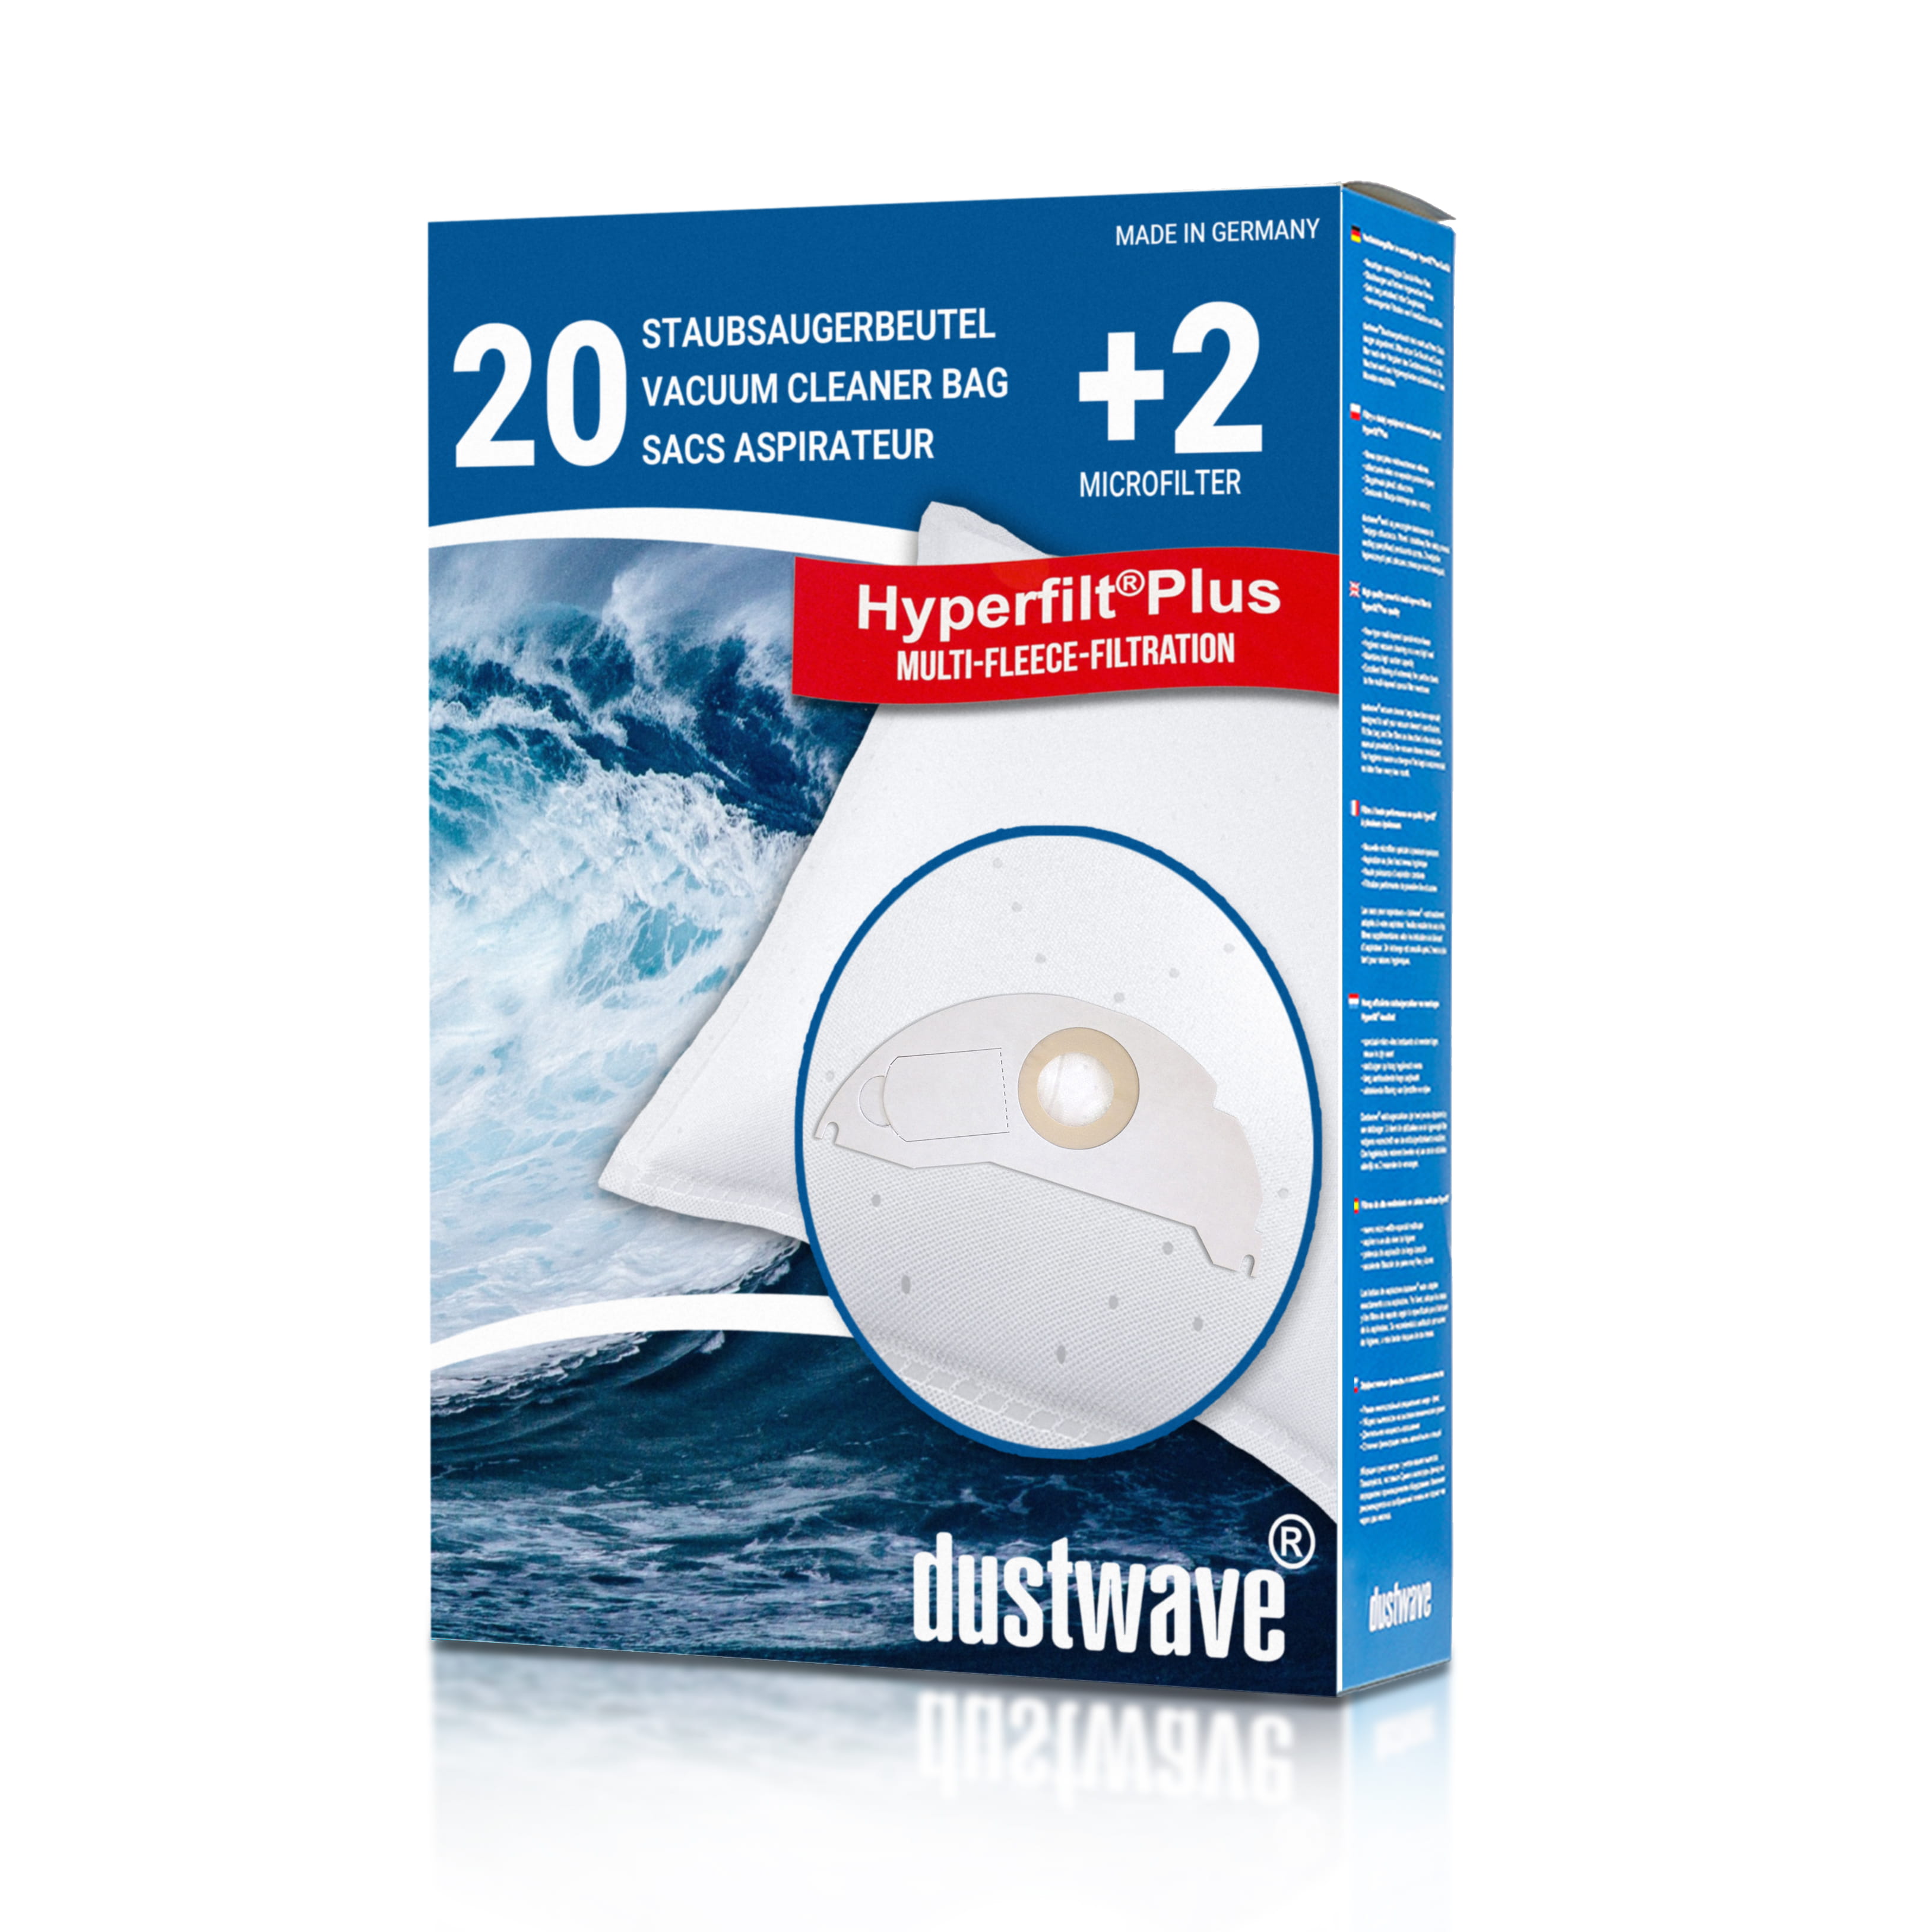 Dustwave® 20 Staubsaugerbeutel für Hoover BD S5125011 - hocheffizient, mehrlagiges Mikrovlies mit Hygieneverschluss - Made in Germany